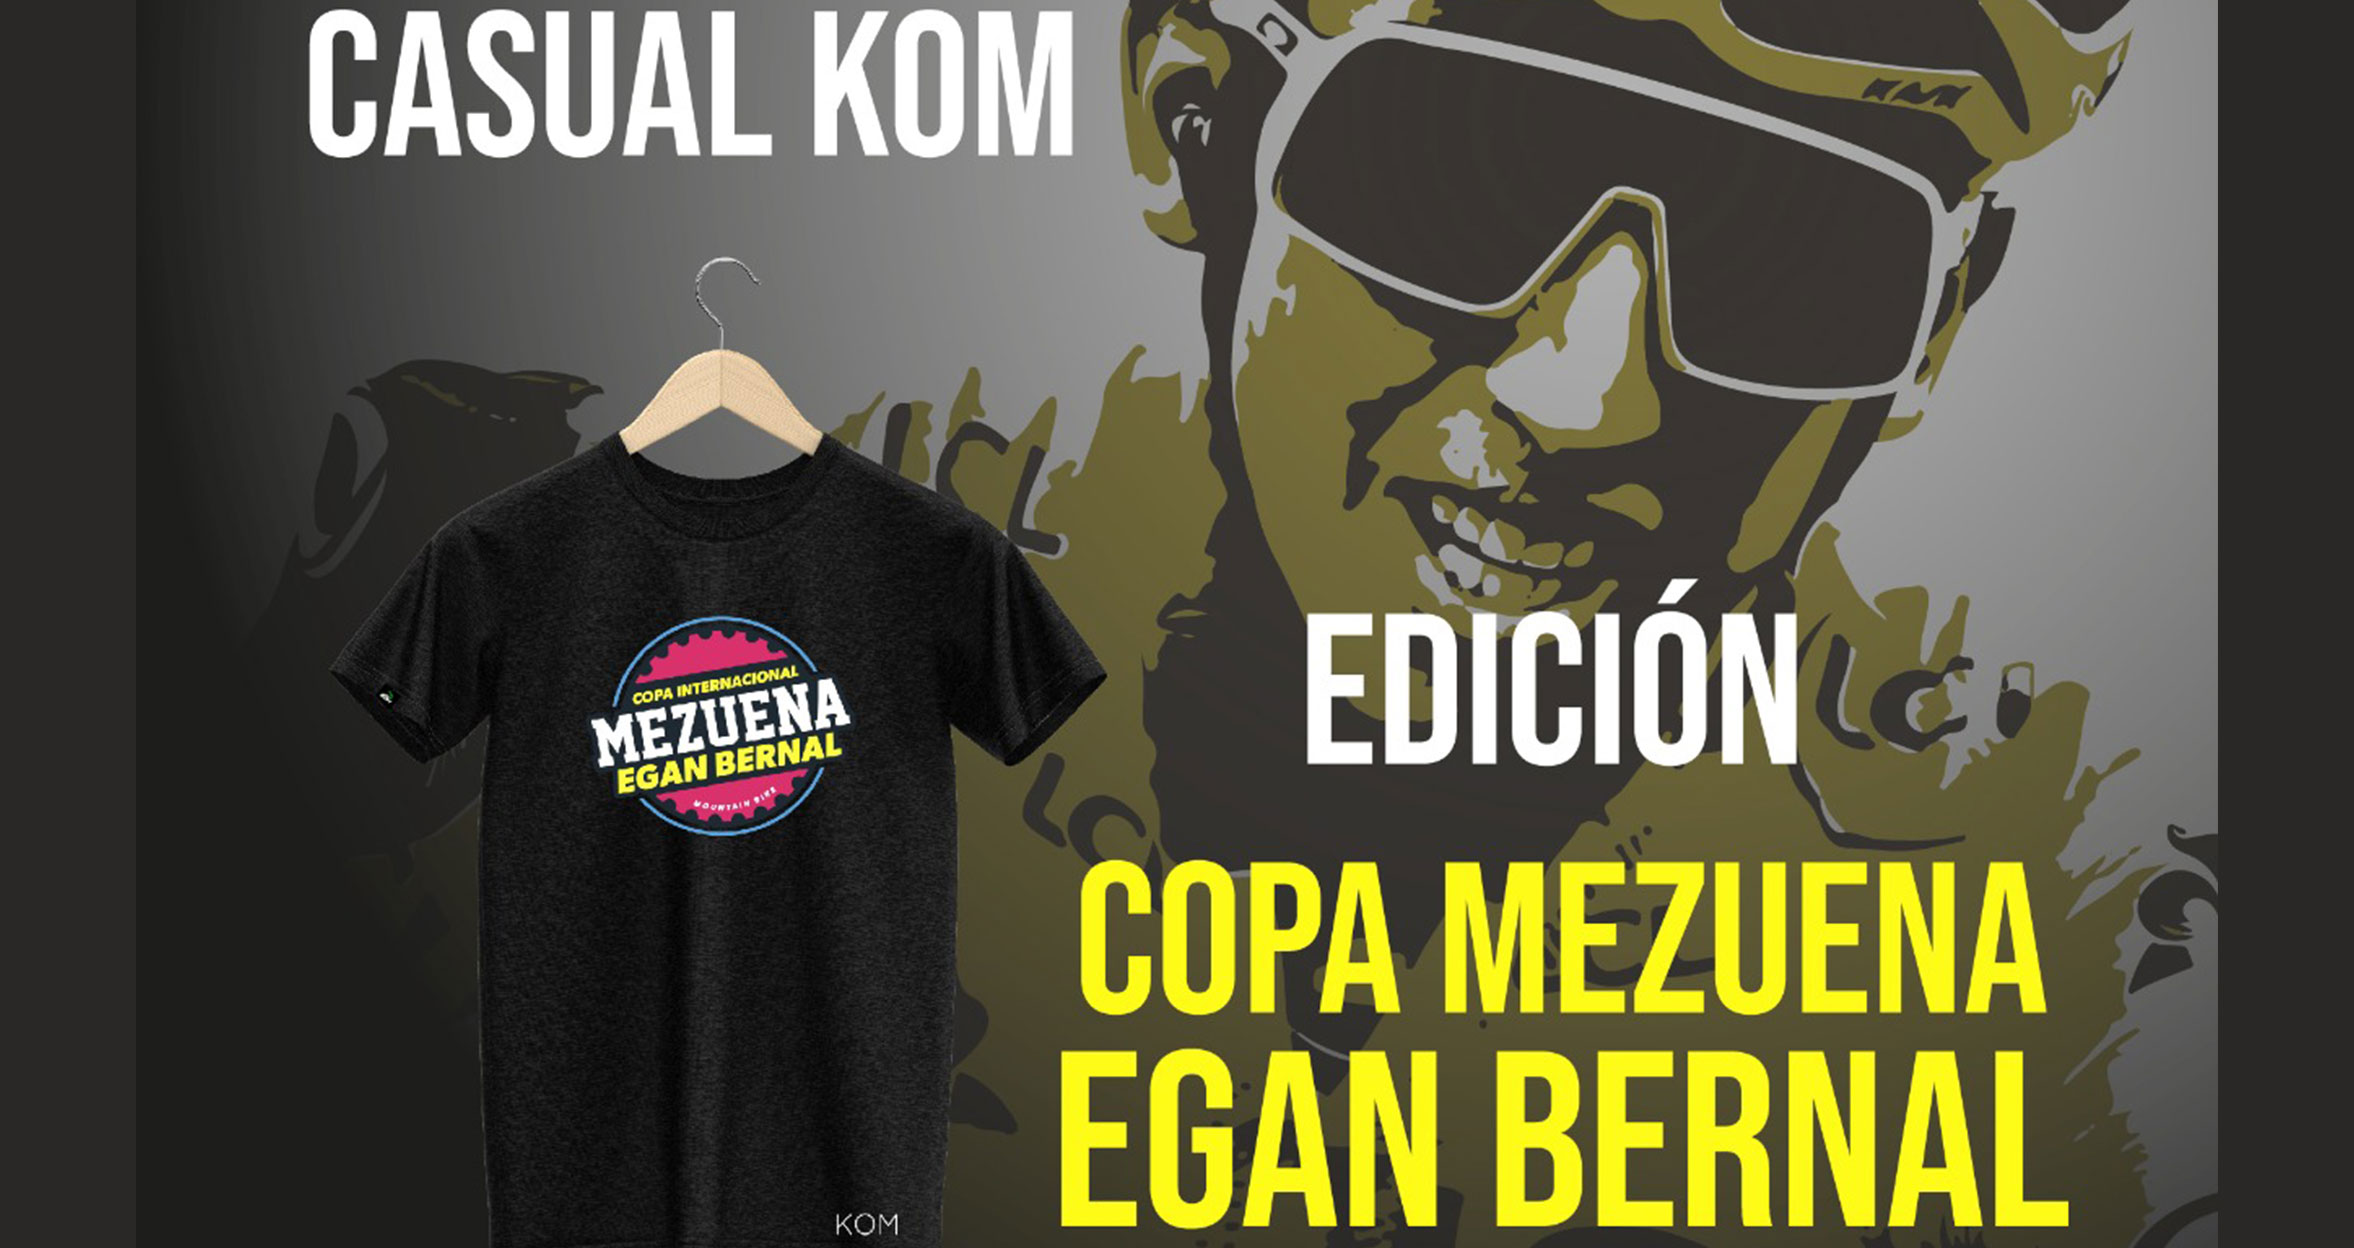 VENTAS: No te quedes sin tus prendas de la Copa Mezuena Egan Bernal